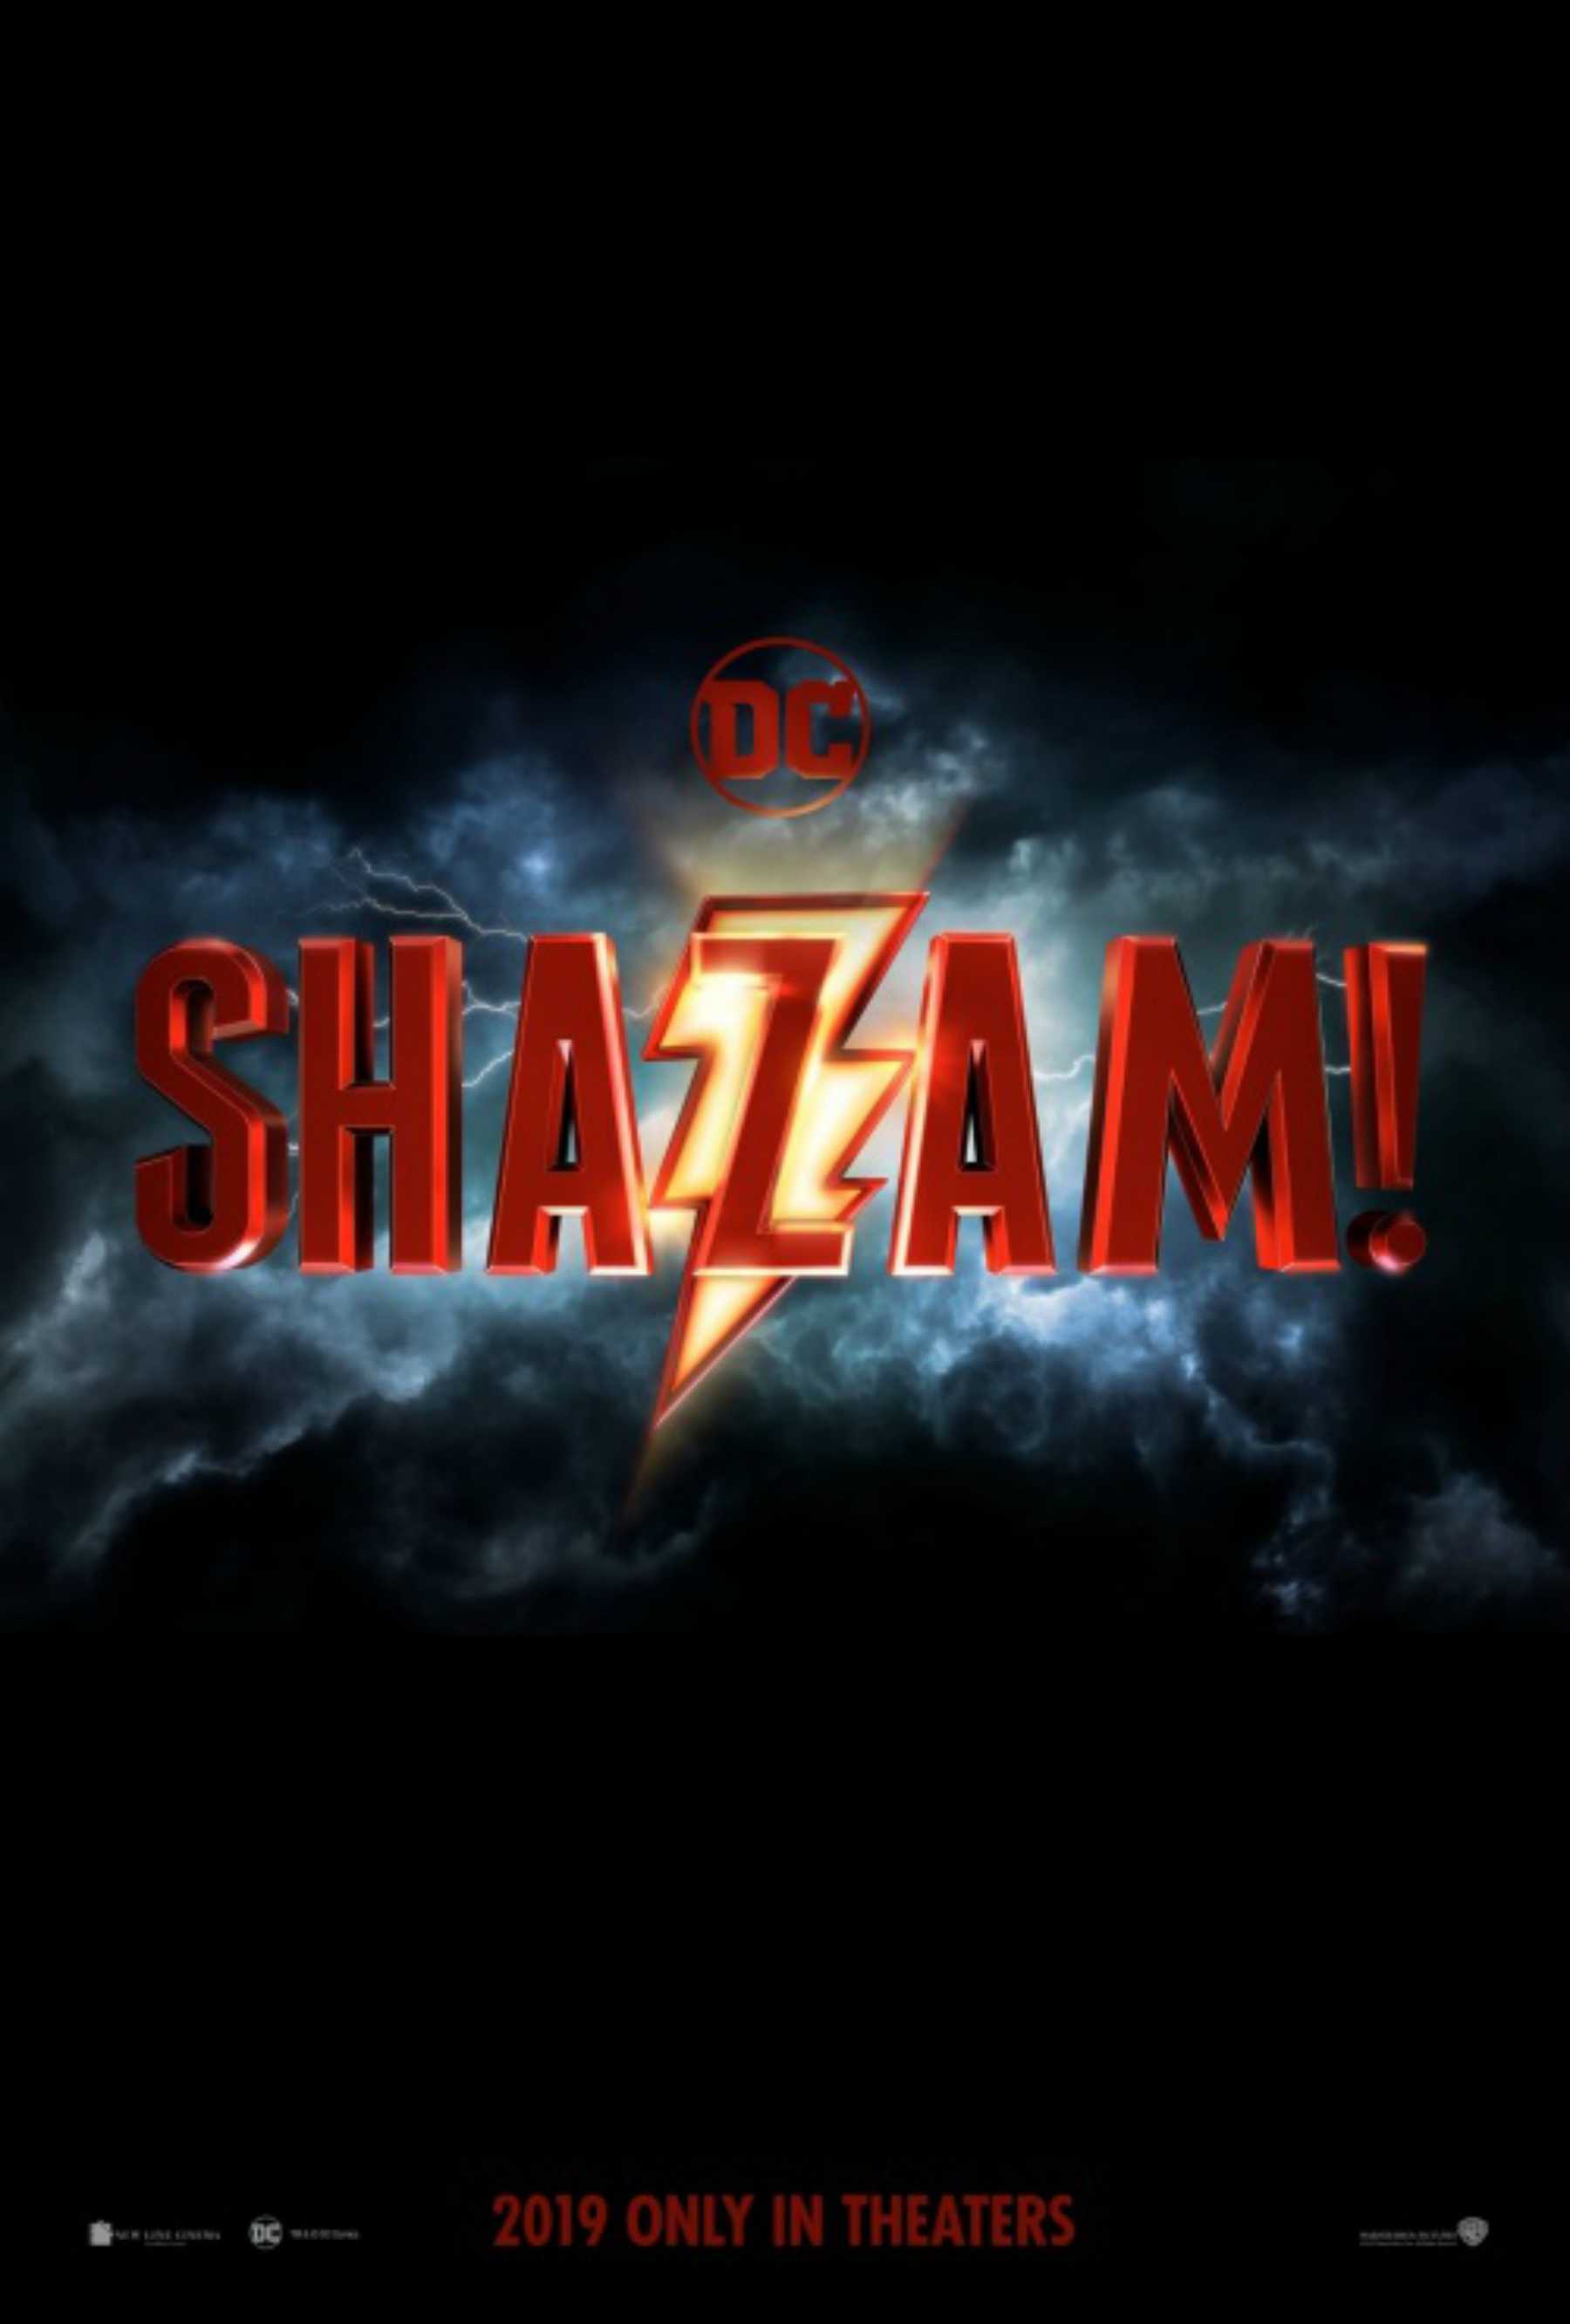 Mira el primer póster con el logo de Shazam!